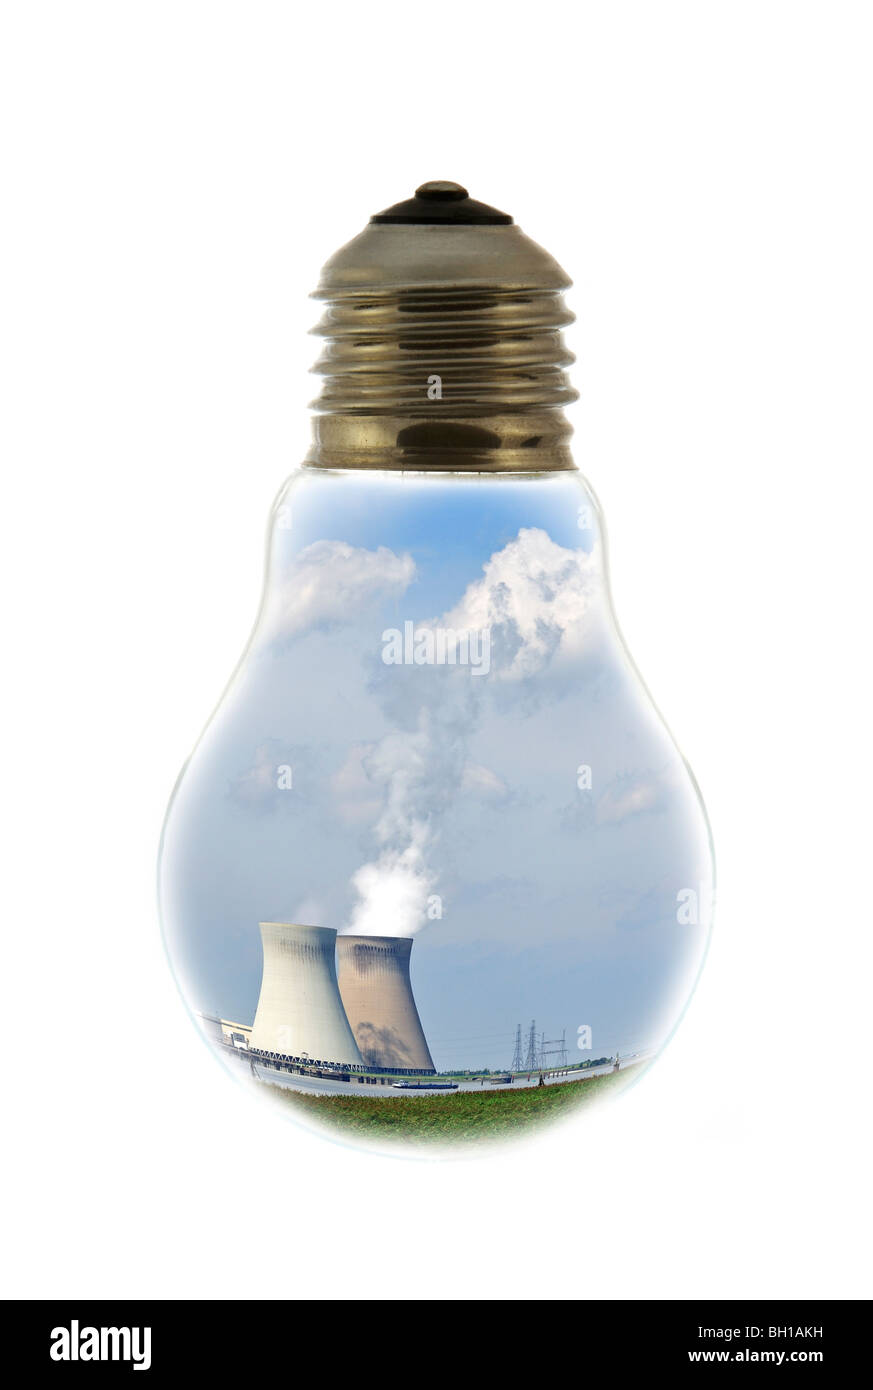 Torri di raffreddamento di un impianto ad energia nucleare all'interno della lampada ad incandescenza / lampadina contro uno sfondo bianco Foto Stock